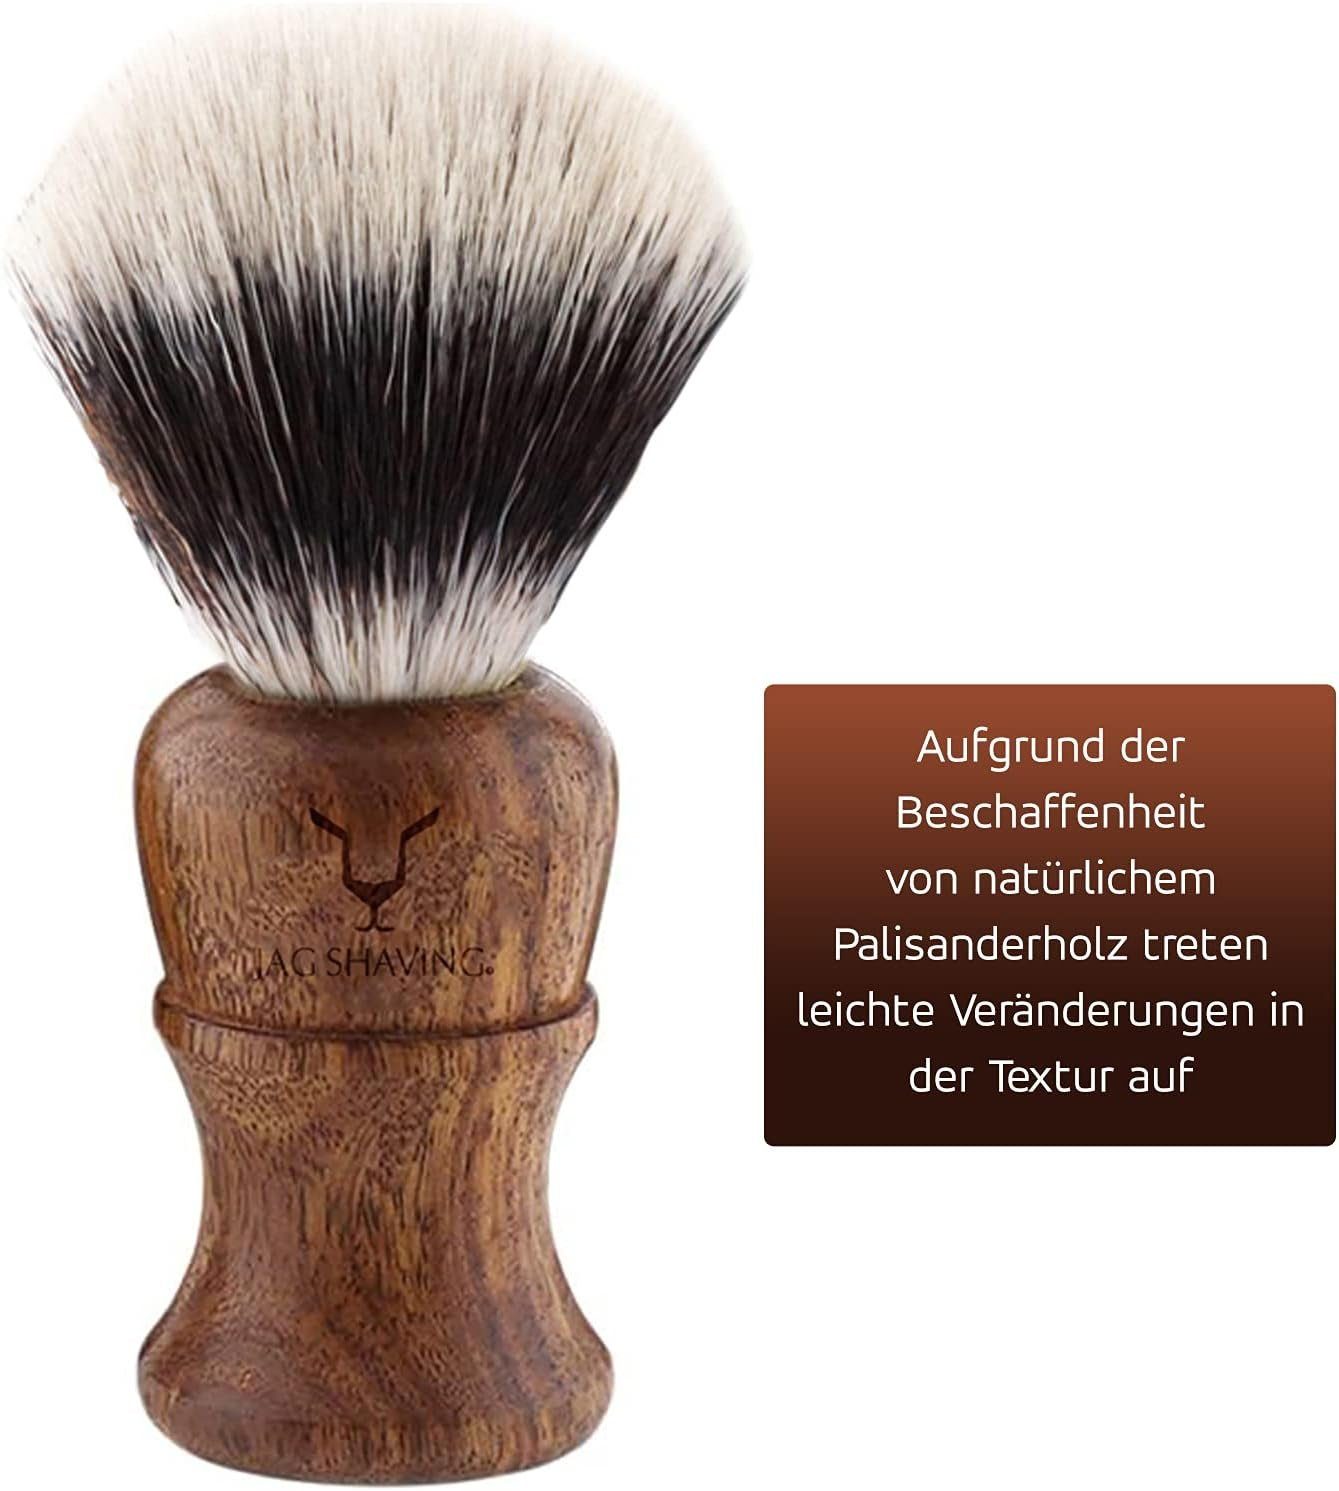 JAG 4-Piece Shaving Rasierpinsel-Set Synthetic Shaving Wooden – 4 tlg. Brush, Hair SHAVING Silver Tip Set